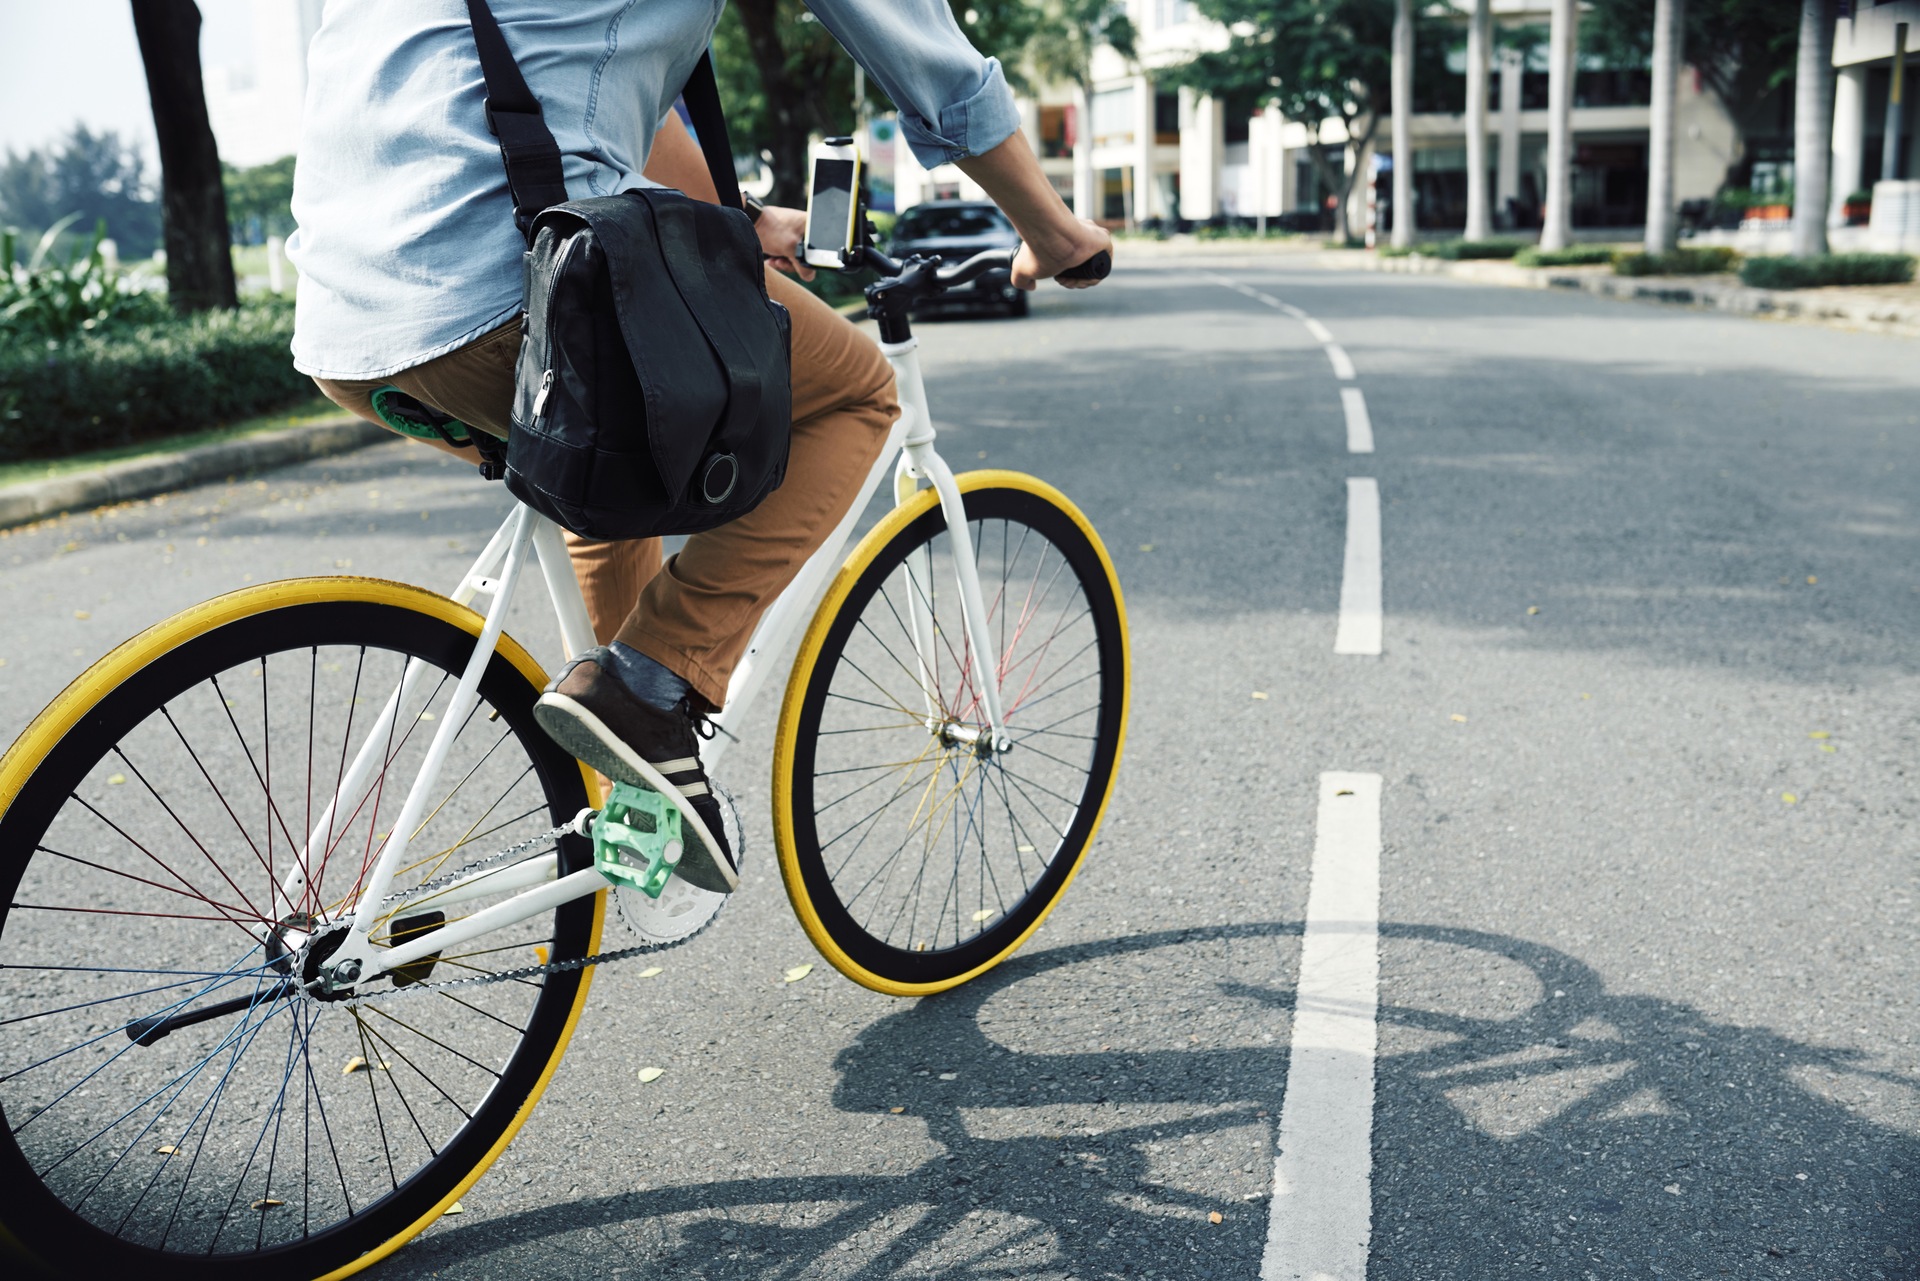 Een fietsende man midden op de weg. De fiets heeft geel gekleurde banden en regenboog spaken.